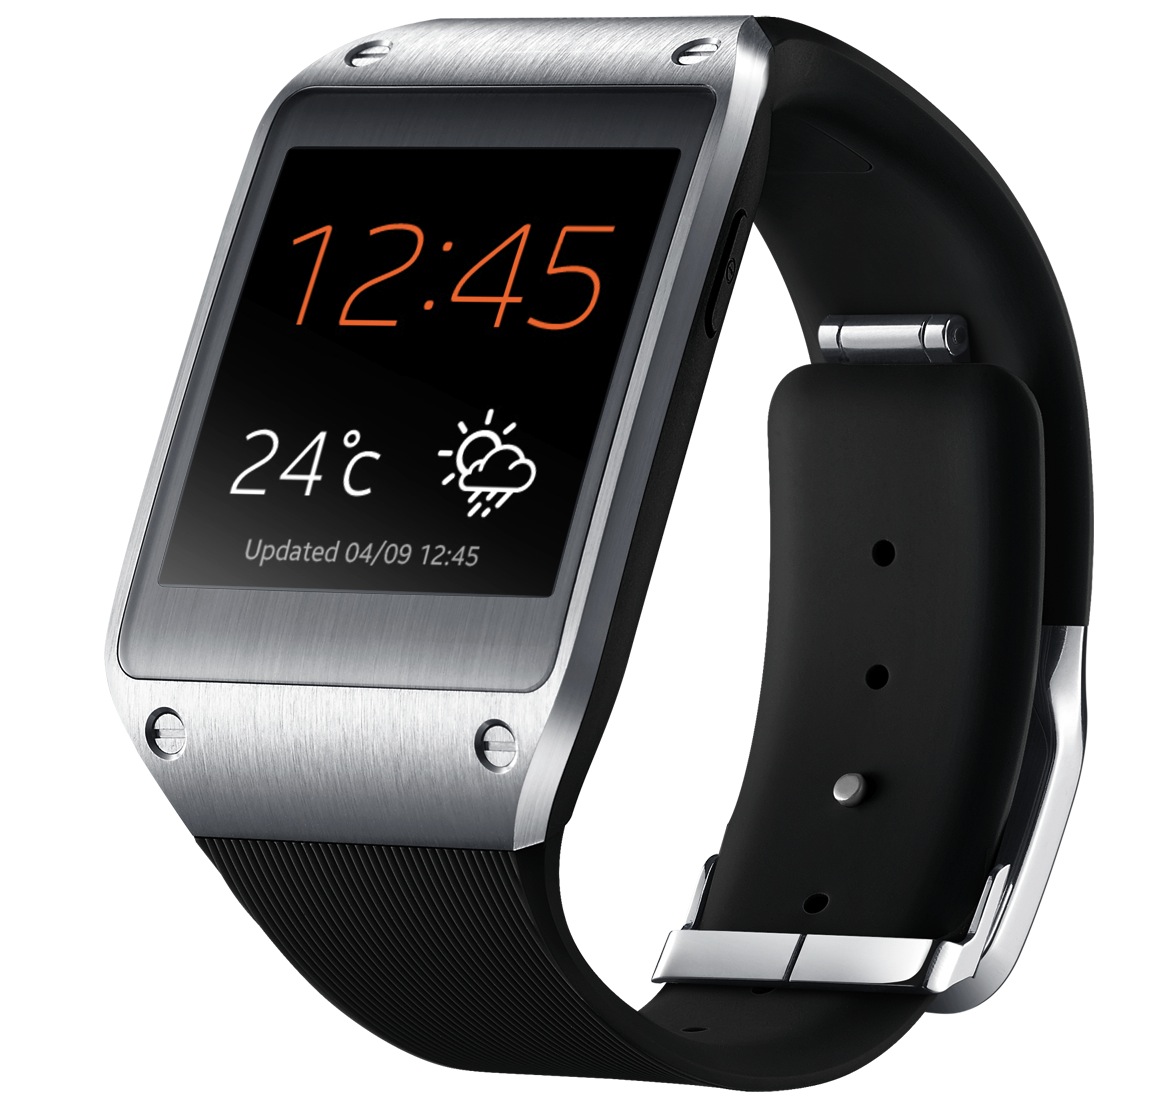 Samsung Galaxy Gear watch